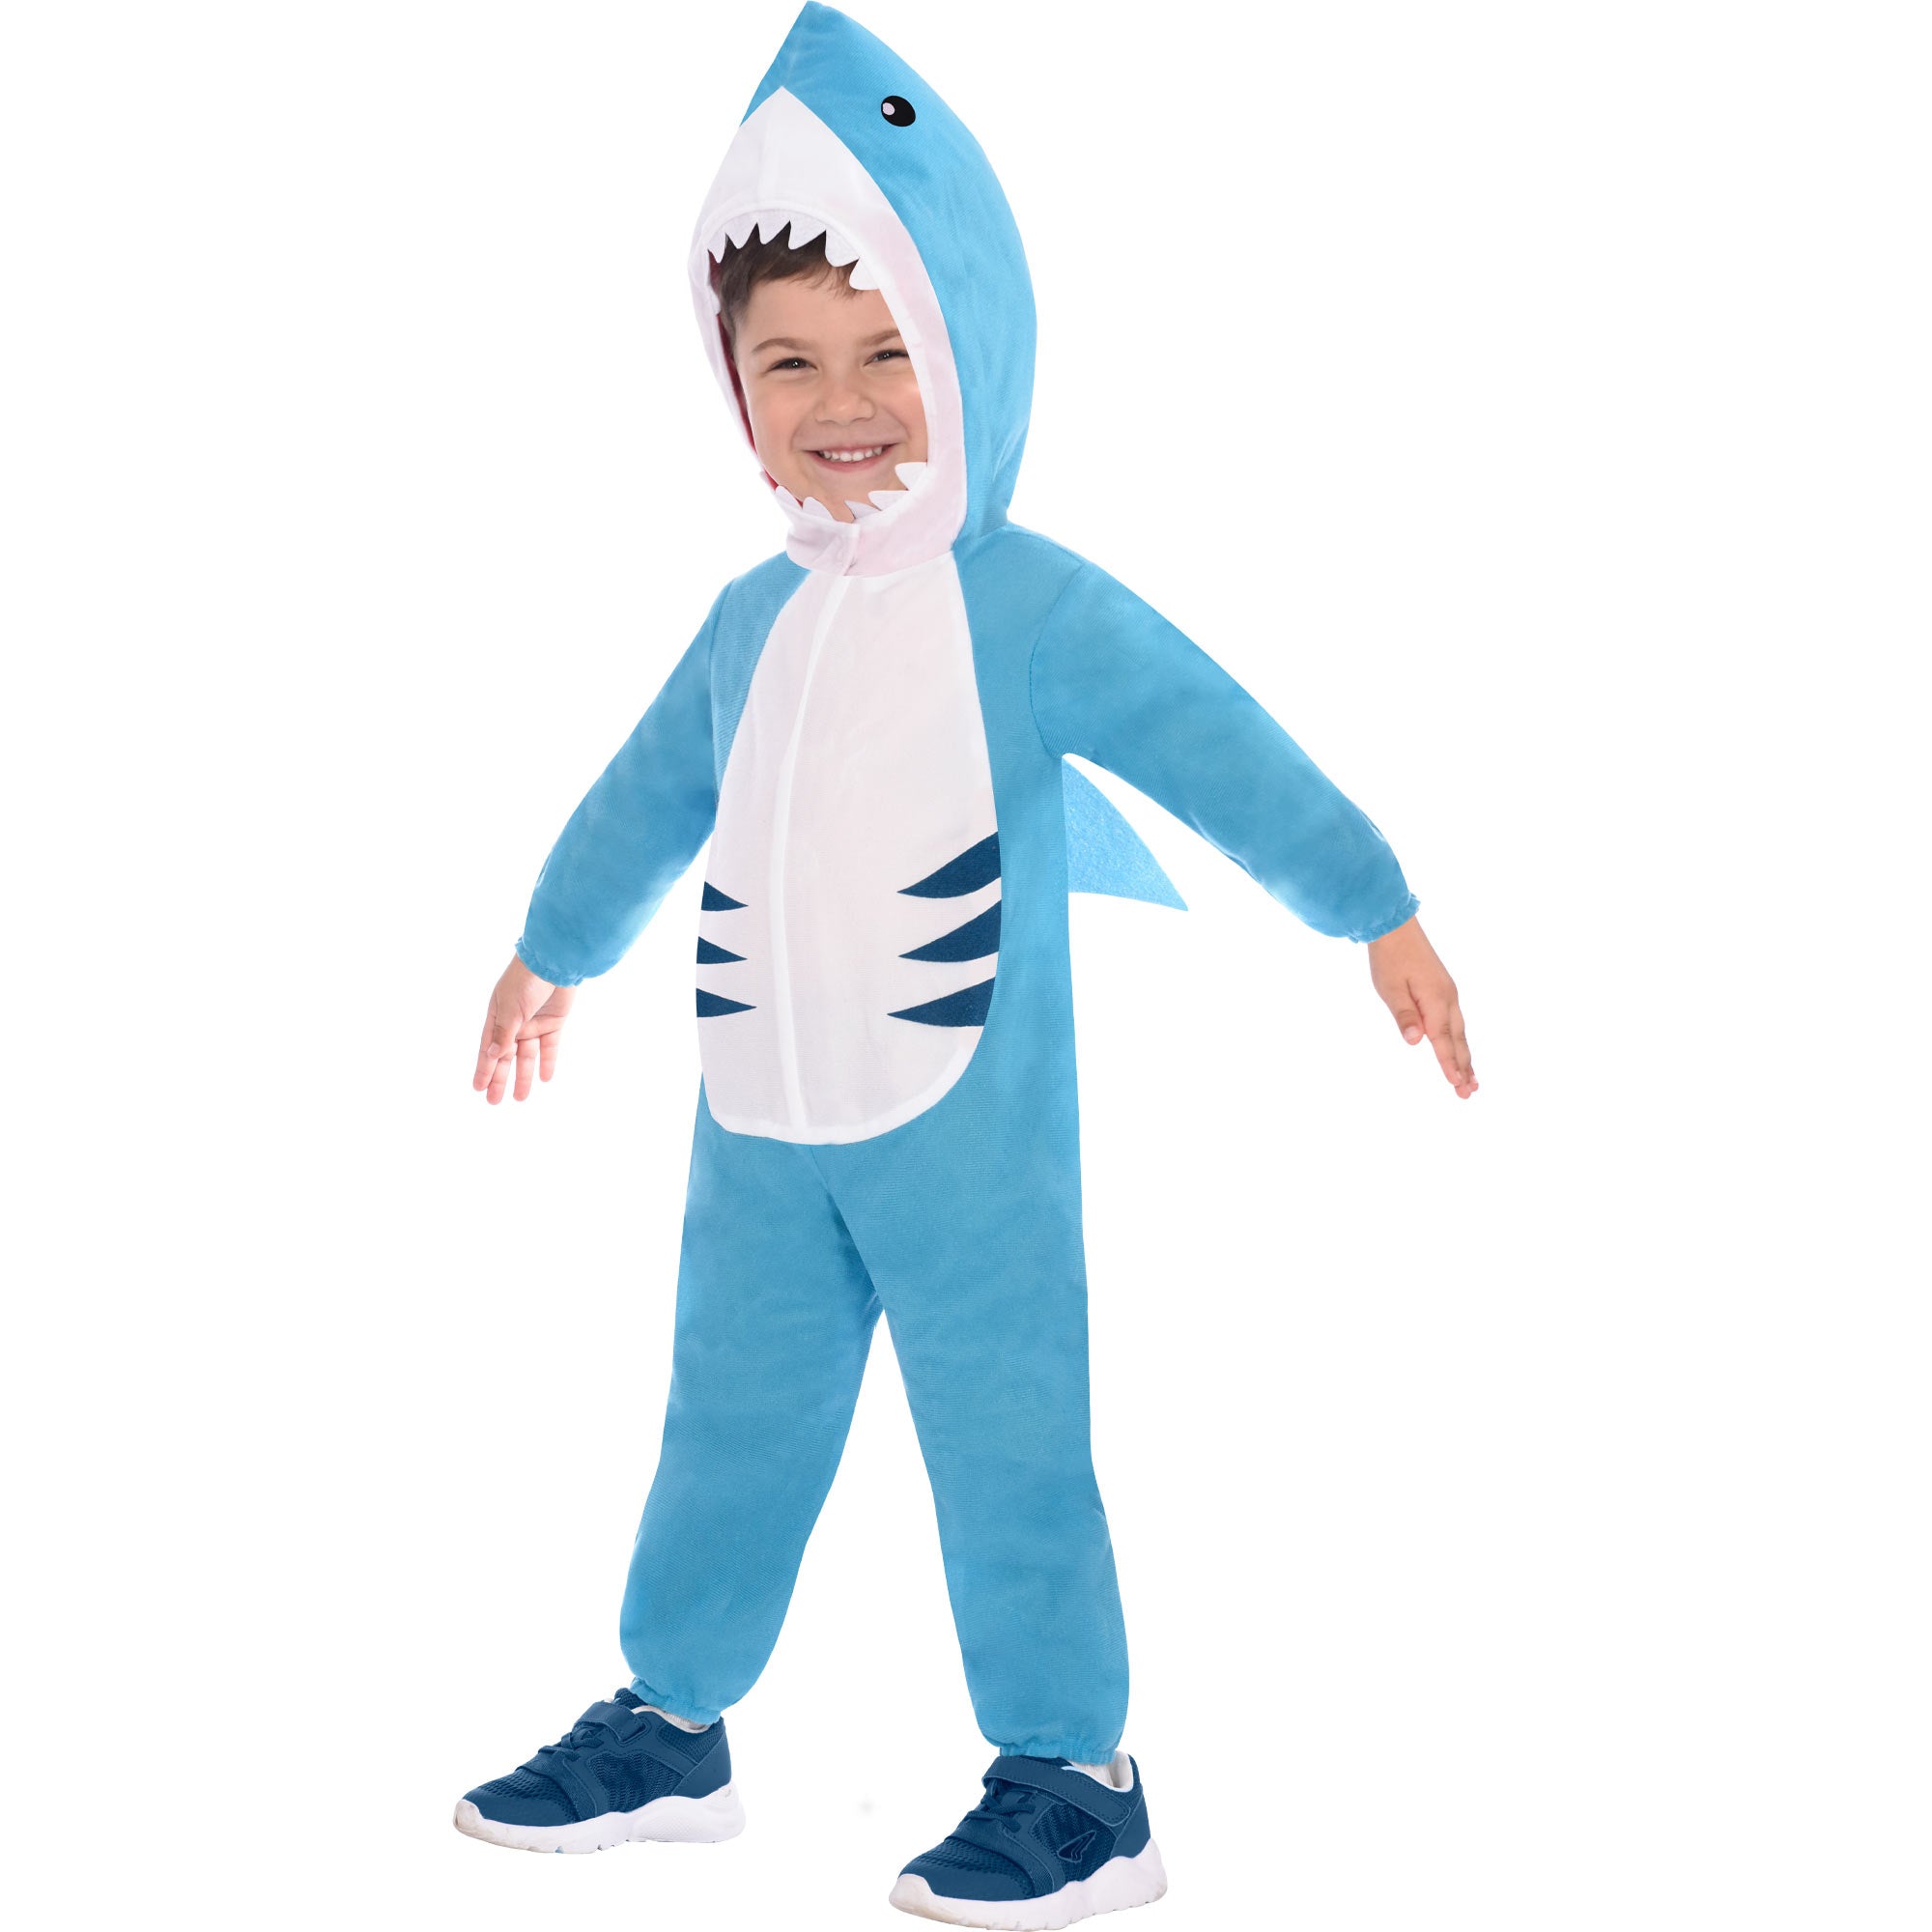 Costume Great White Shark - Child